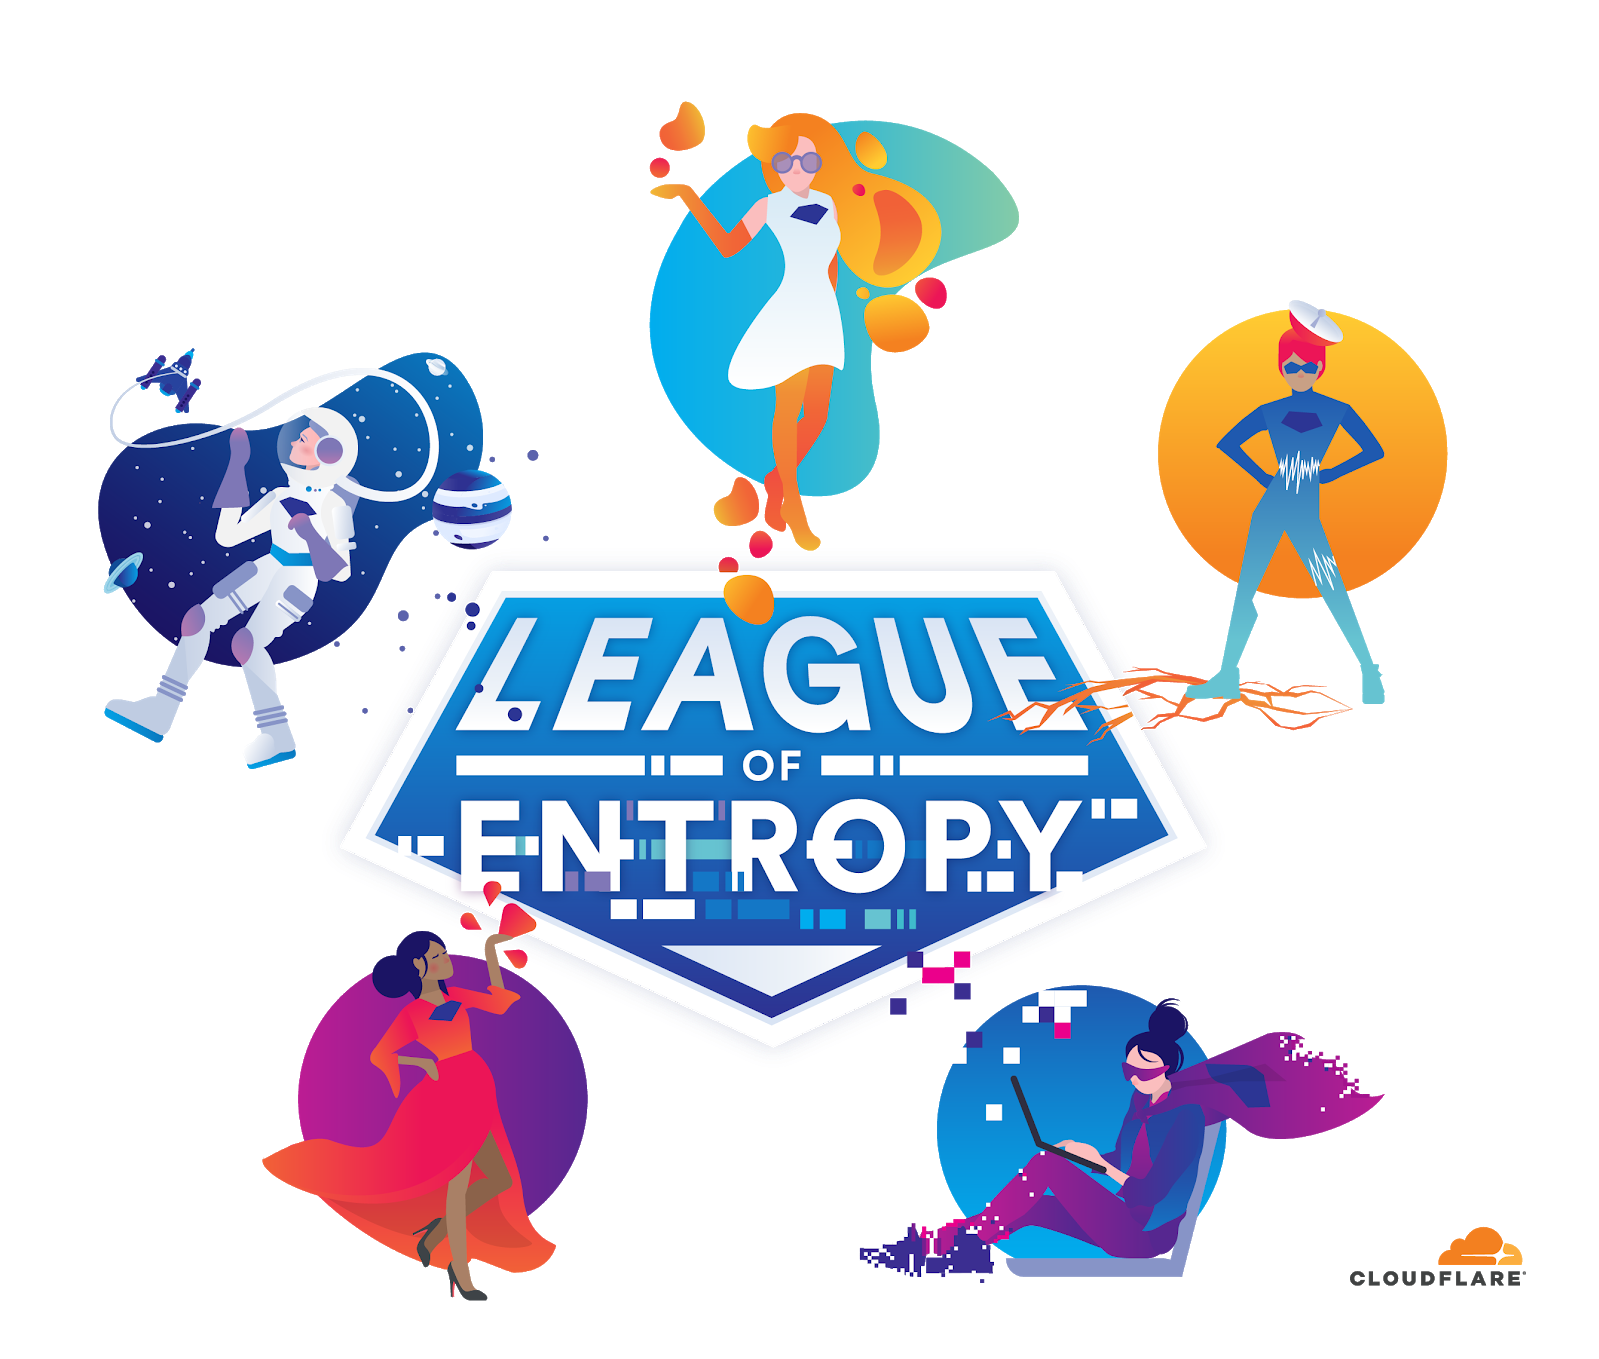 La Liga de la Entropía es una iniciativa de colaboración mundial para producir aleatoriedad de consumo público. (Imagen: Cloudflare).